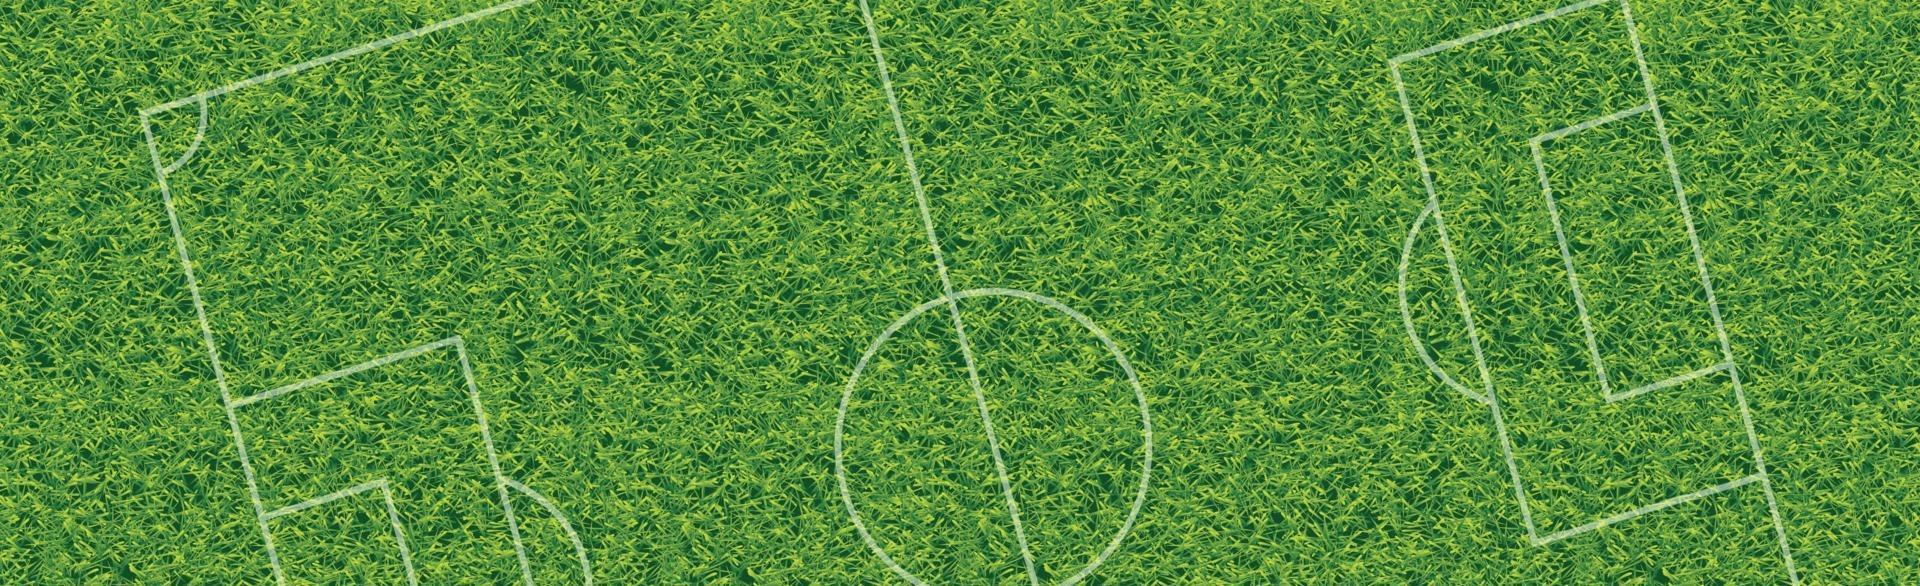 realistisch klassiek voetbalveld met tweekleurige groene coating vector